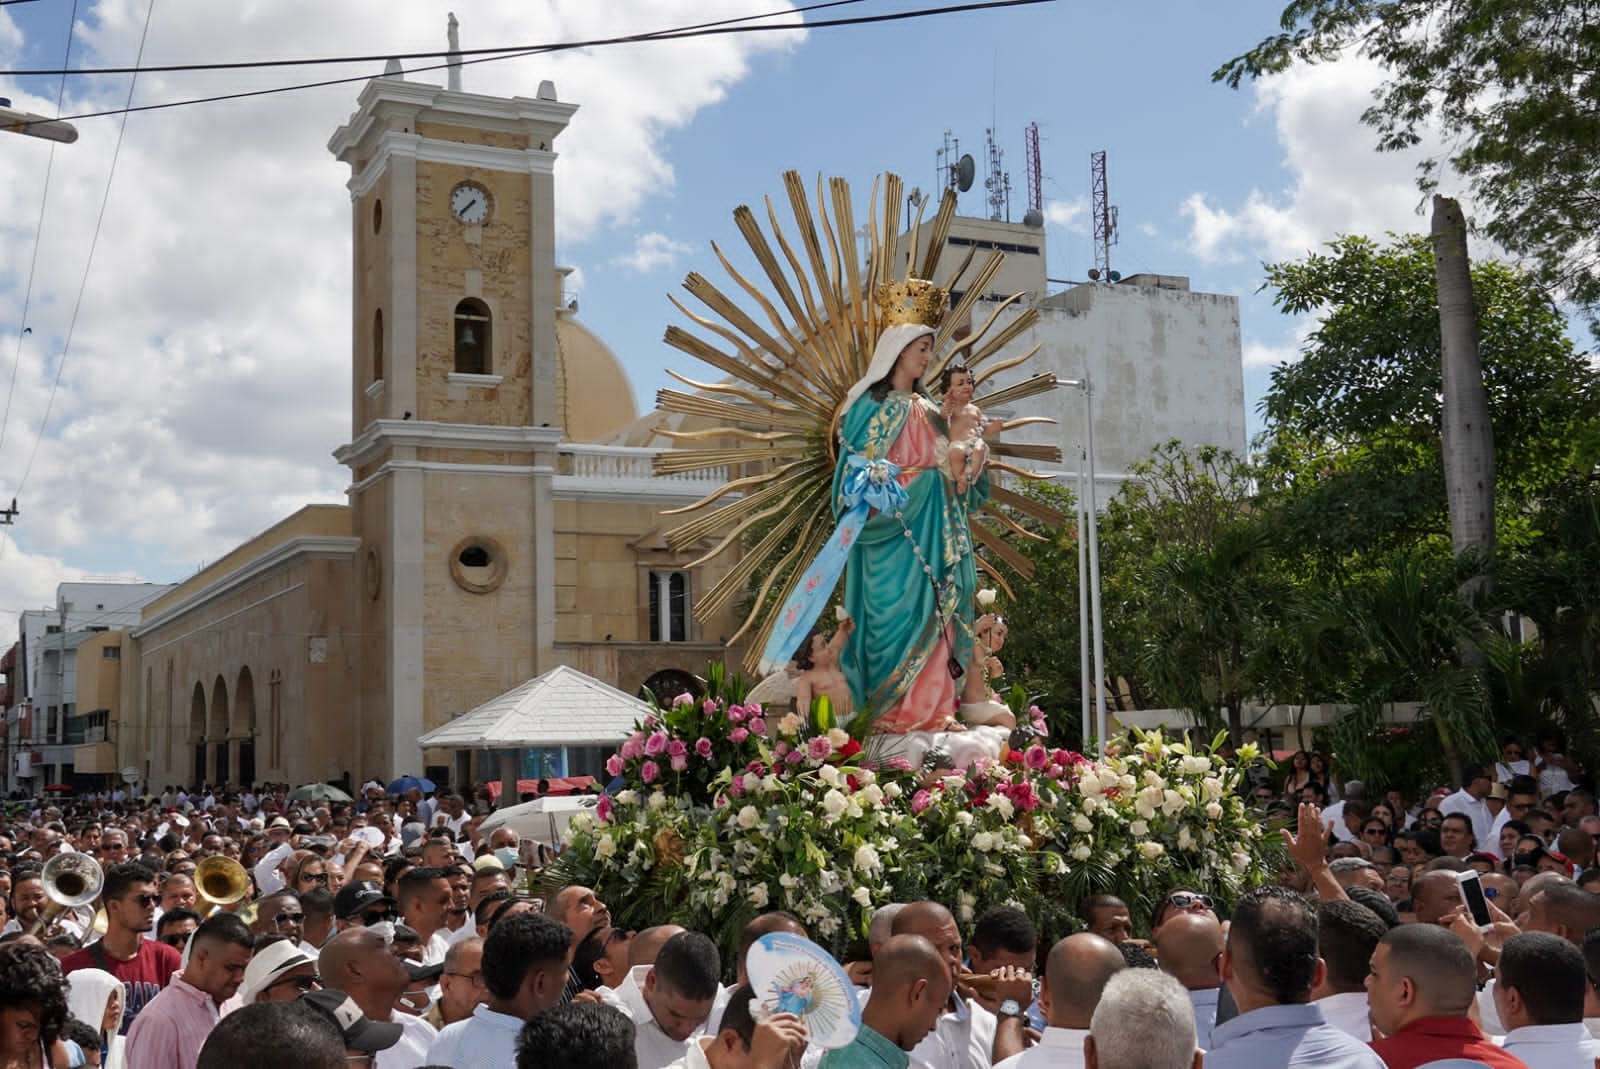 https://www.notasrosas.com/Virgen De Los Remedios: Reina de Reinas, patrona de Riohacha, patrona de su Diócesis y patrona de La Guajira